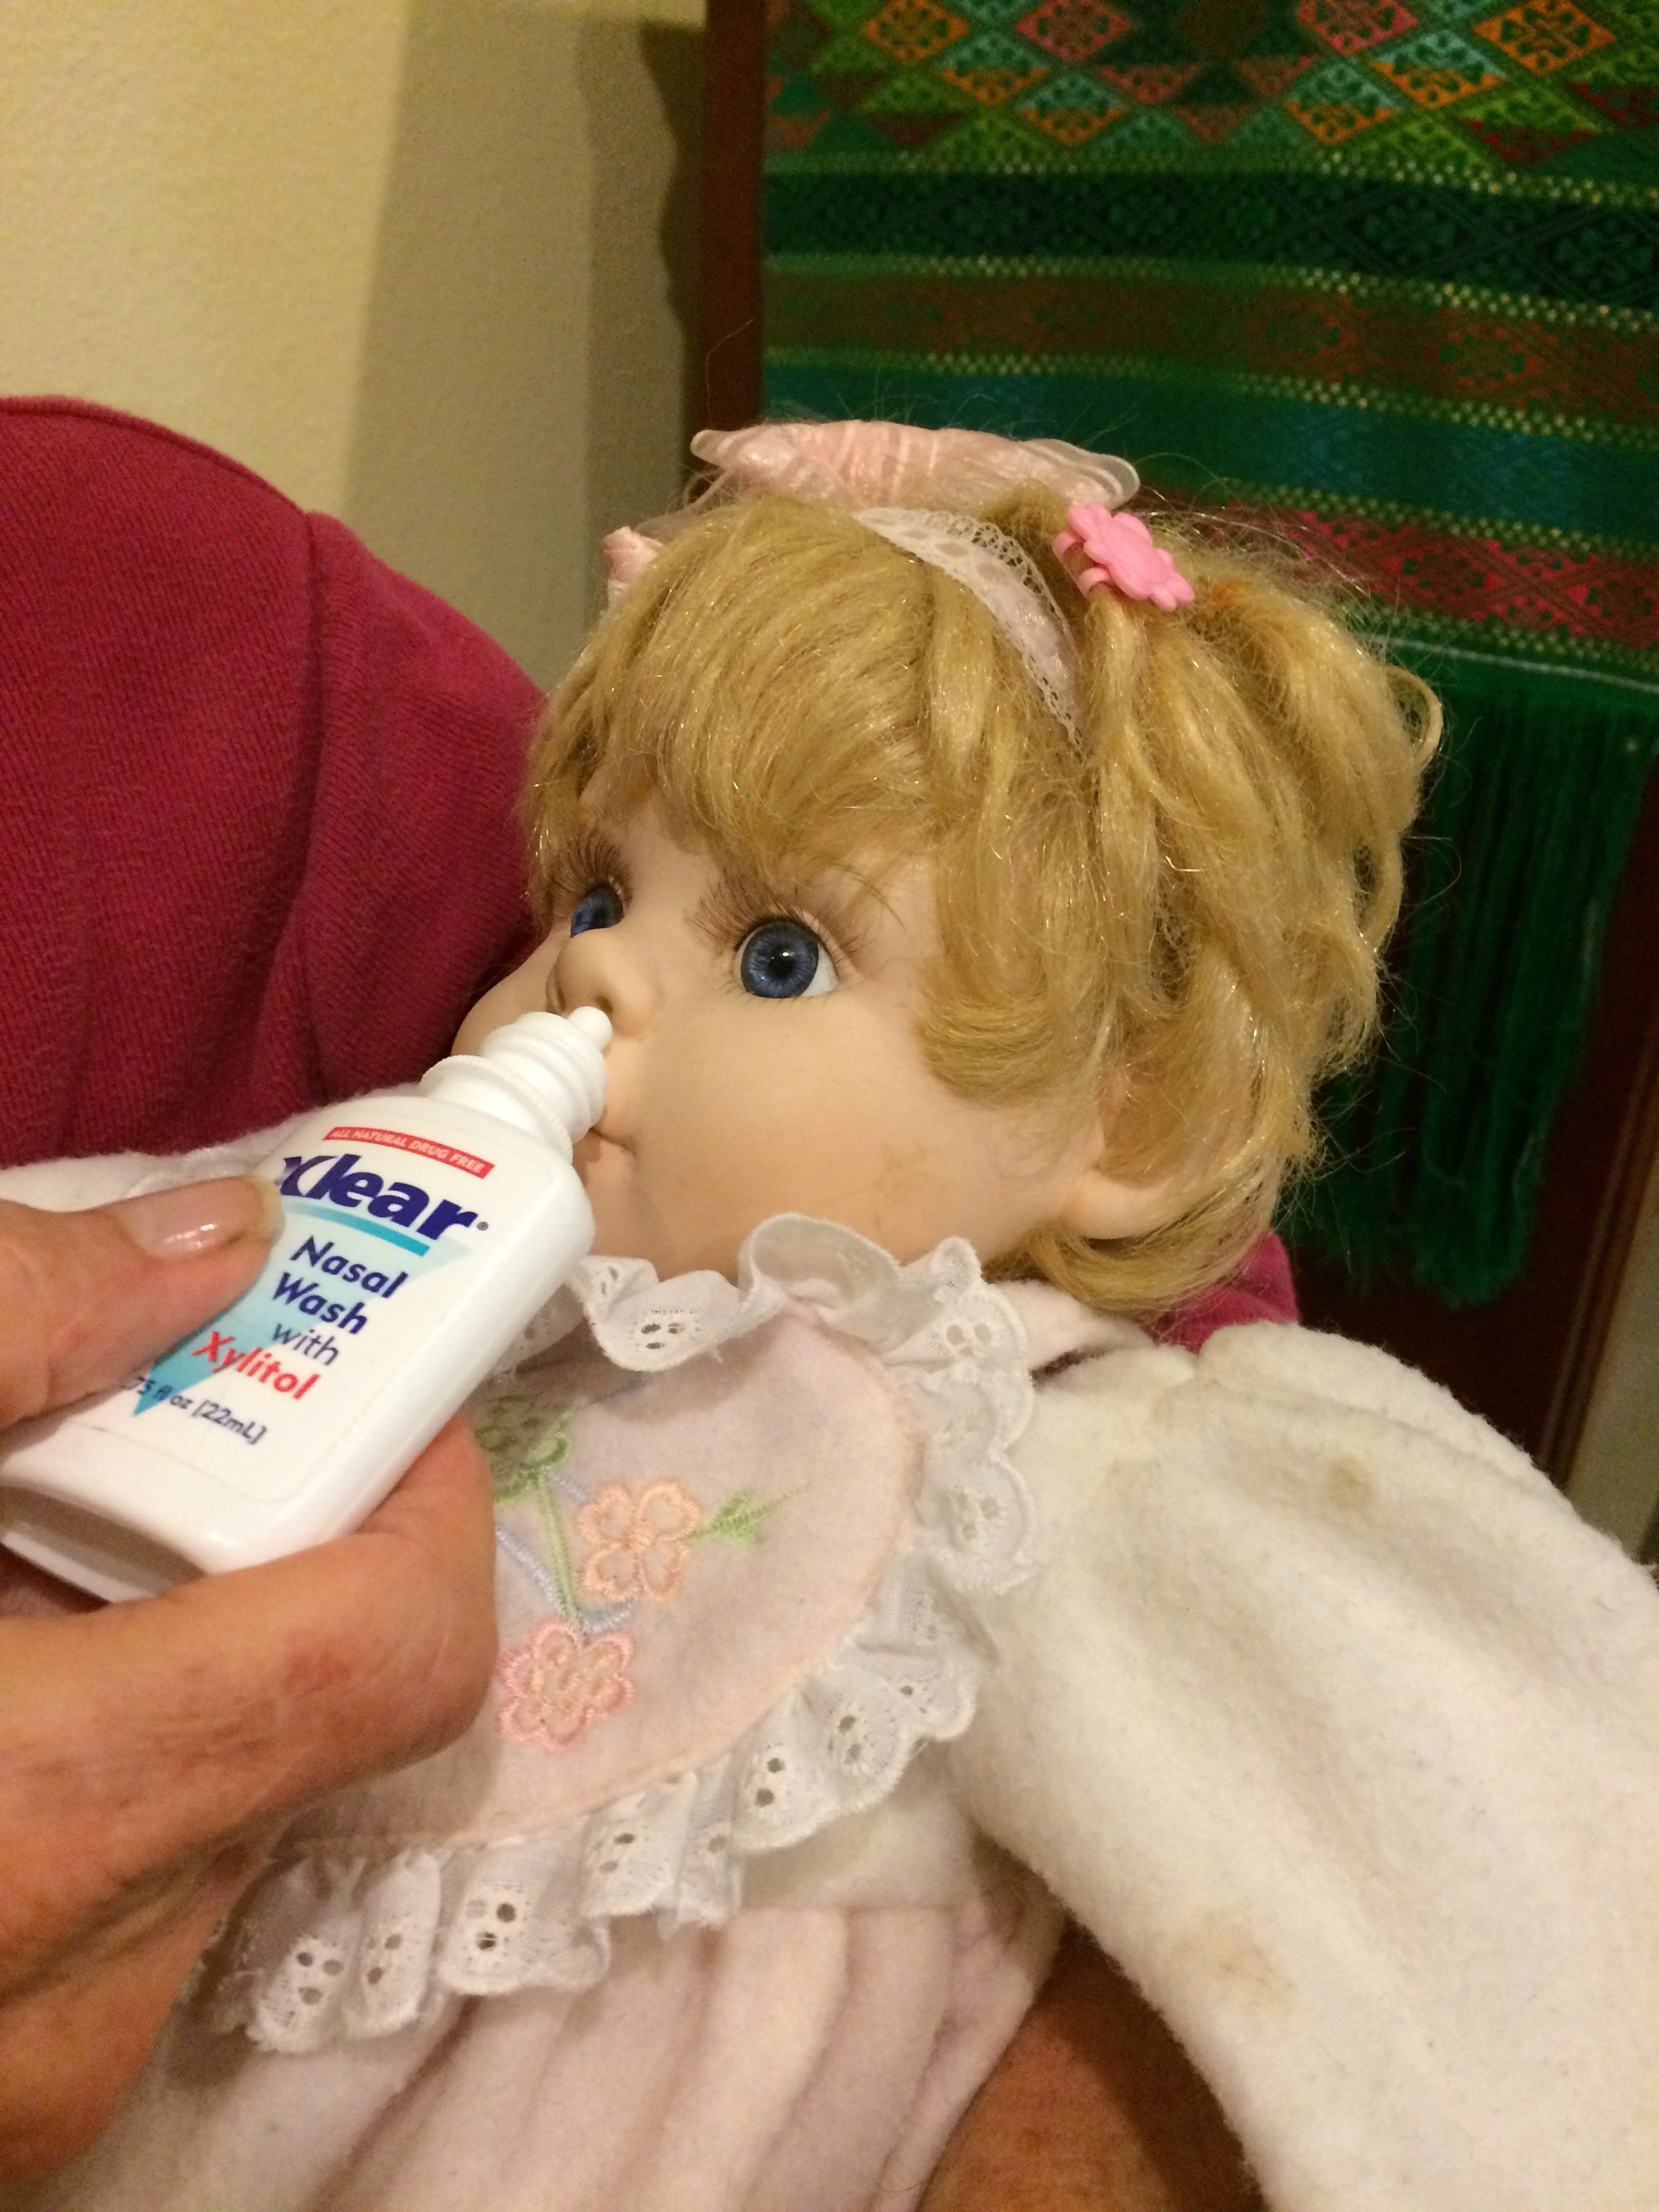 baby nasal wash